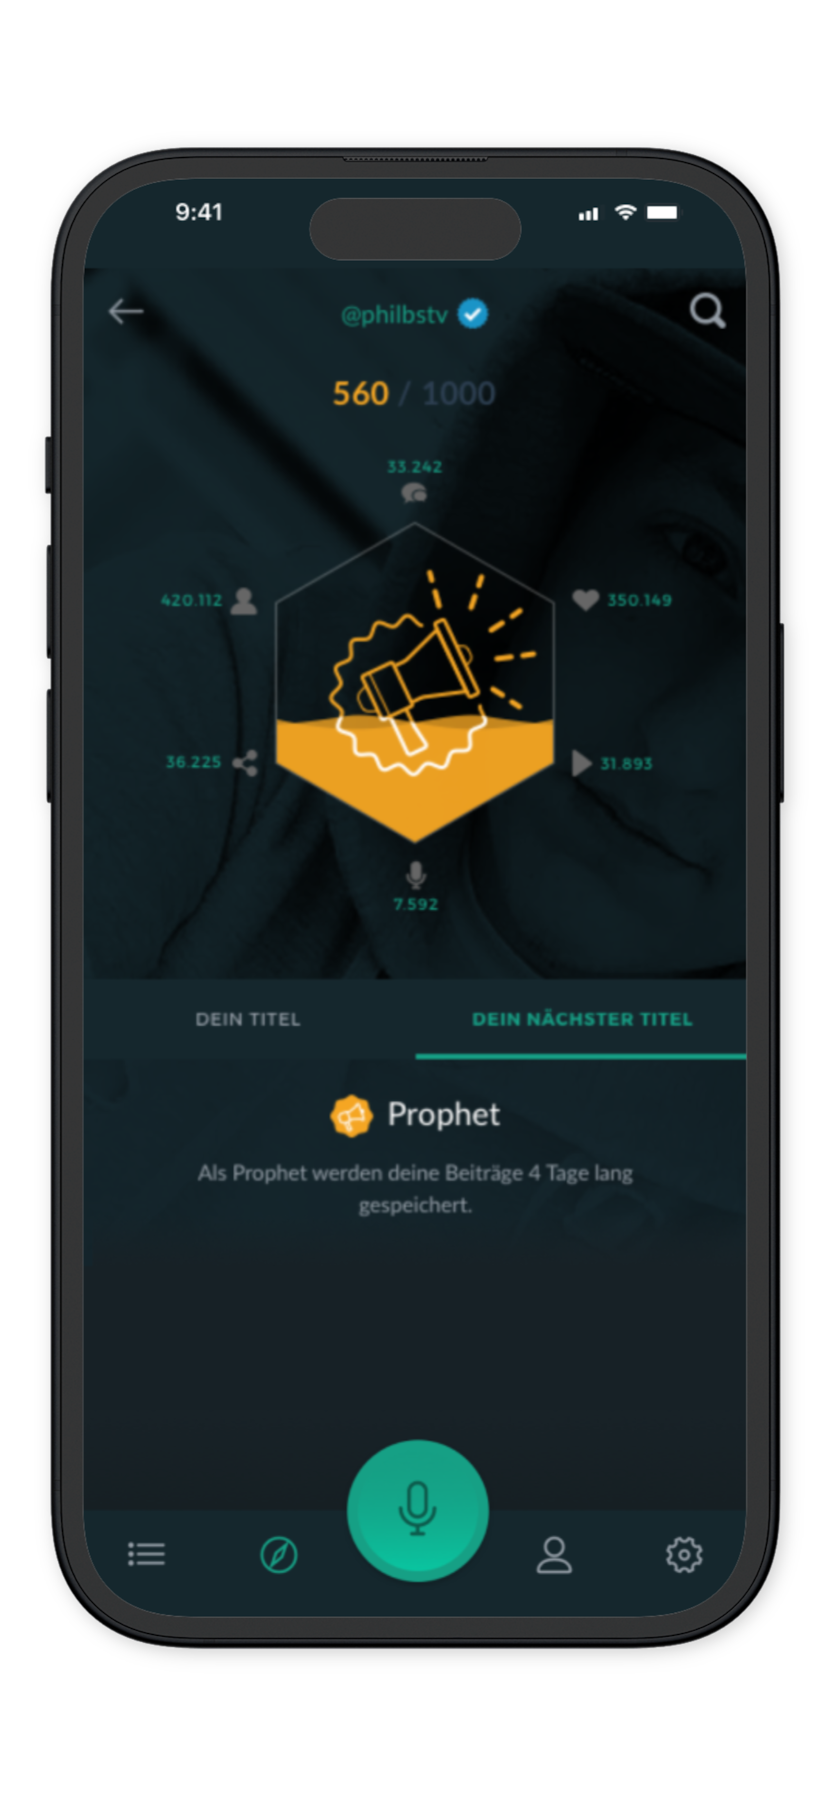 Speakster App Design: Achievements